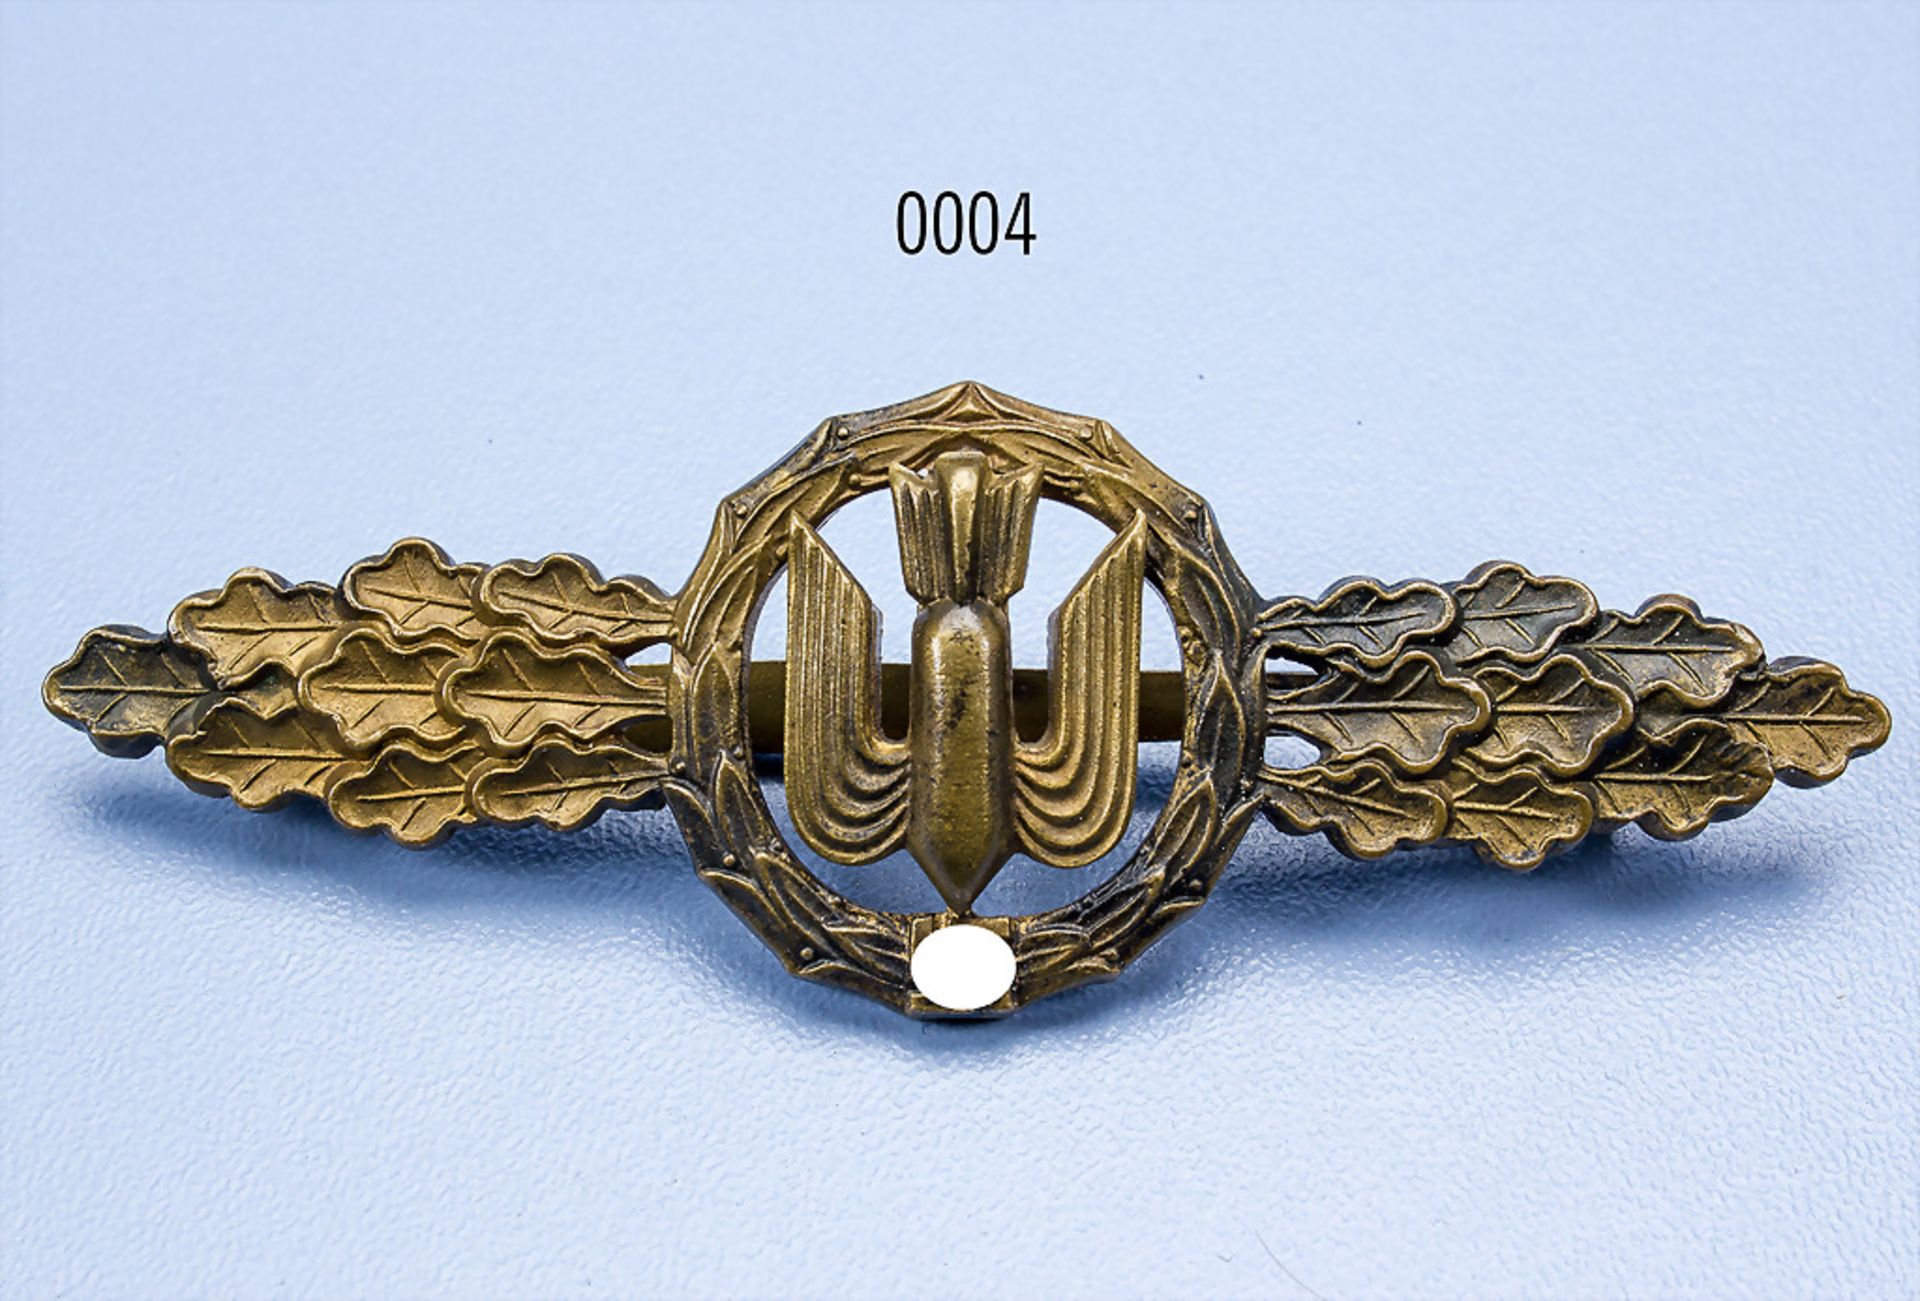 Frontflugspange für Kampfflieger in Bronze, Buntmetall, Hersteller R.S.S., guter Zustand mit